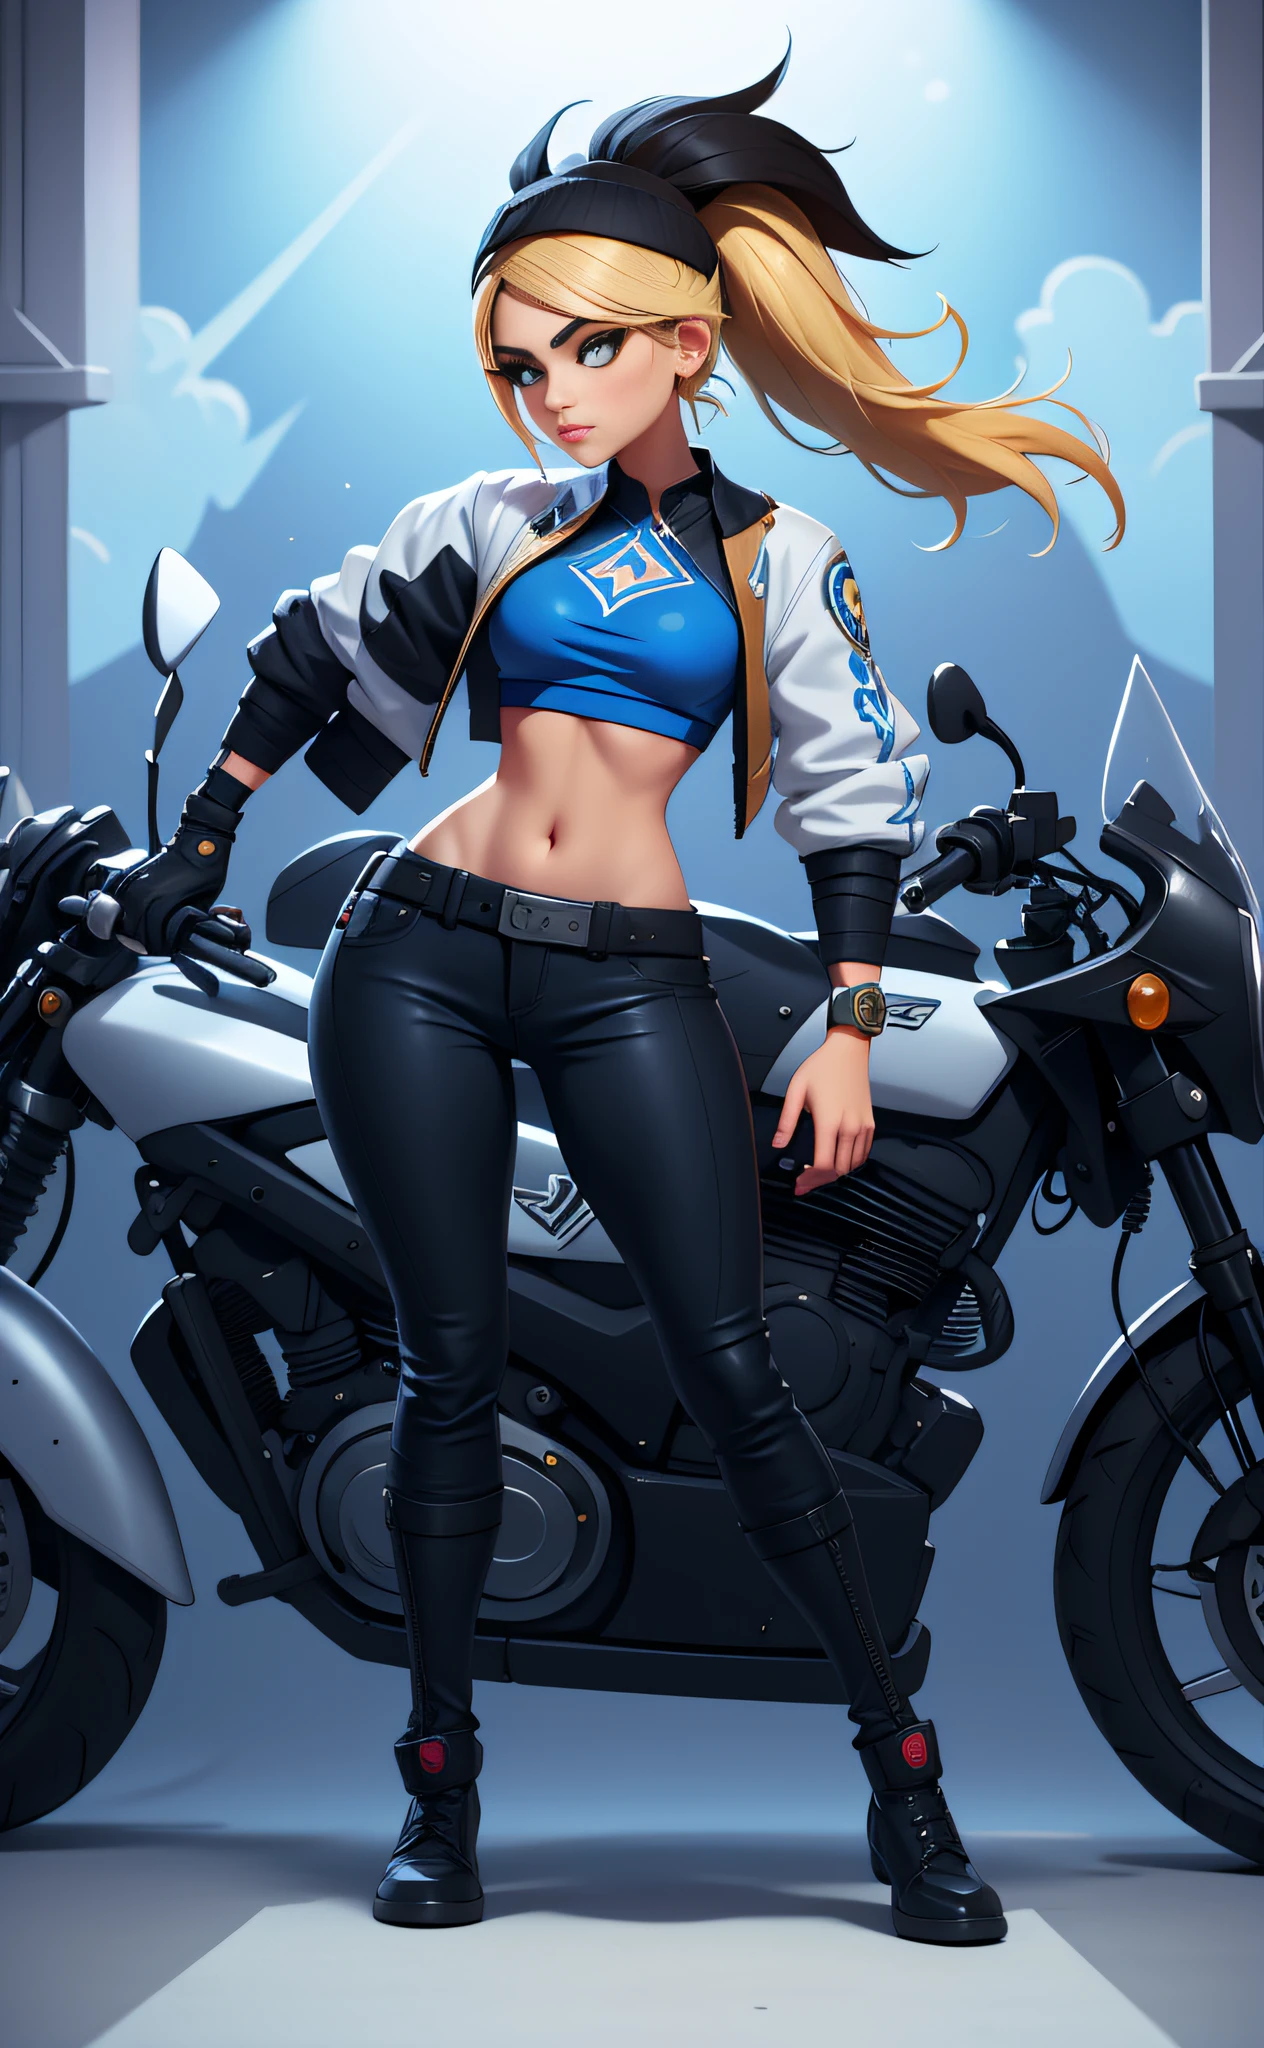 Akali,  League of Legends, mit blonden Haaren und blauem Oberteil steht neben einem Motorrad, kda, extrem detailliertes Artgerm, style artgerm, artgerm jsc, ! dream artgerm, from League of Legends, cushart kenz,